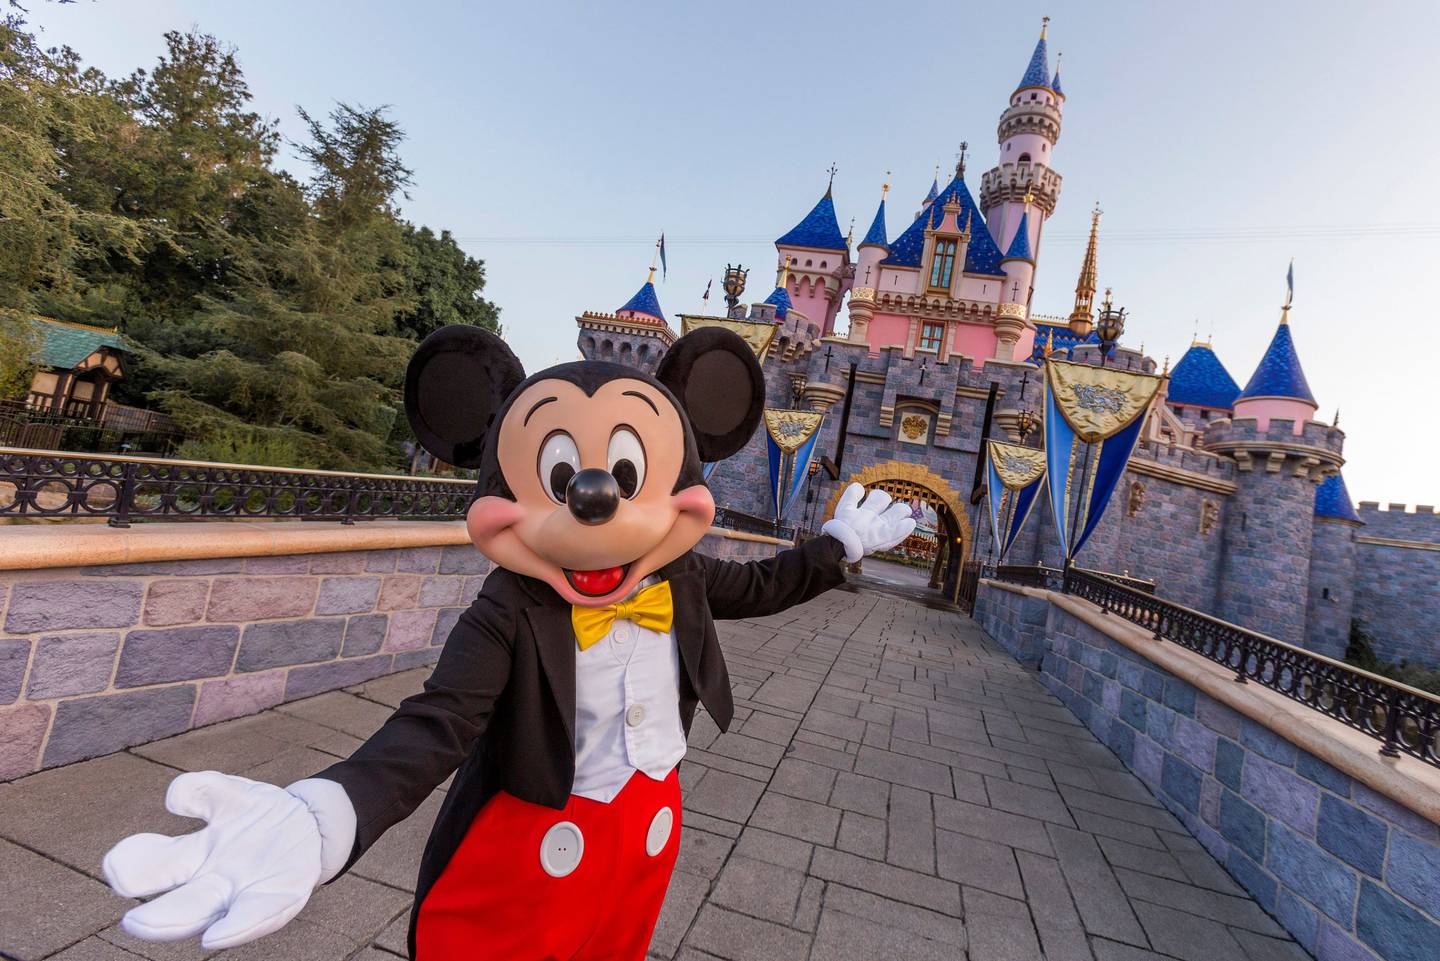 Notícias dos ganhos de assinantes fizeram as ações da Disney subirem